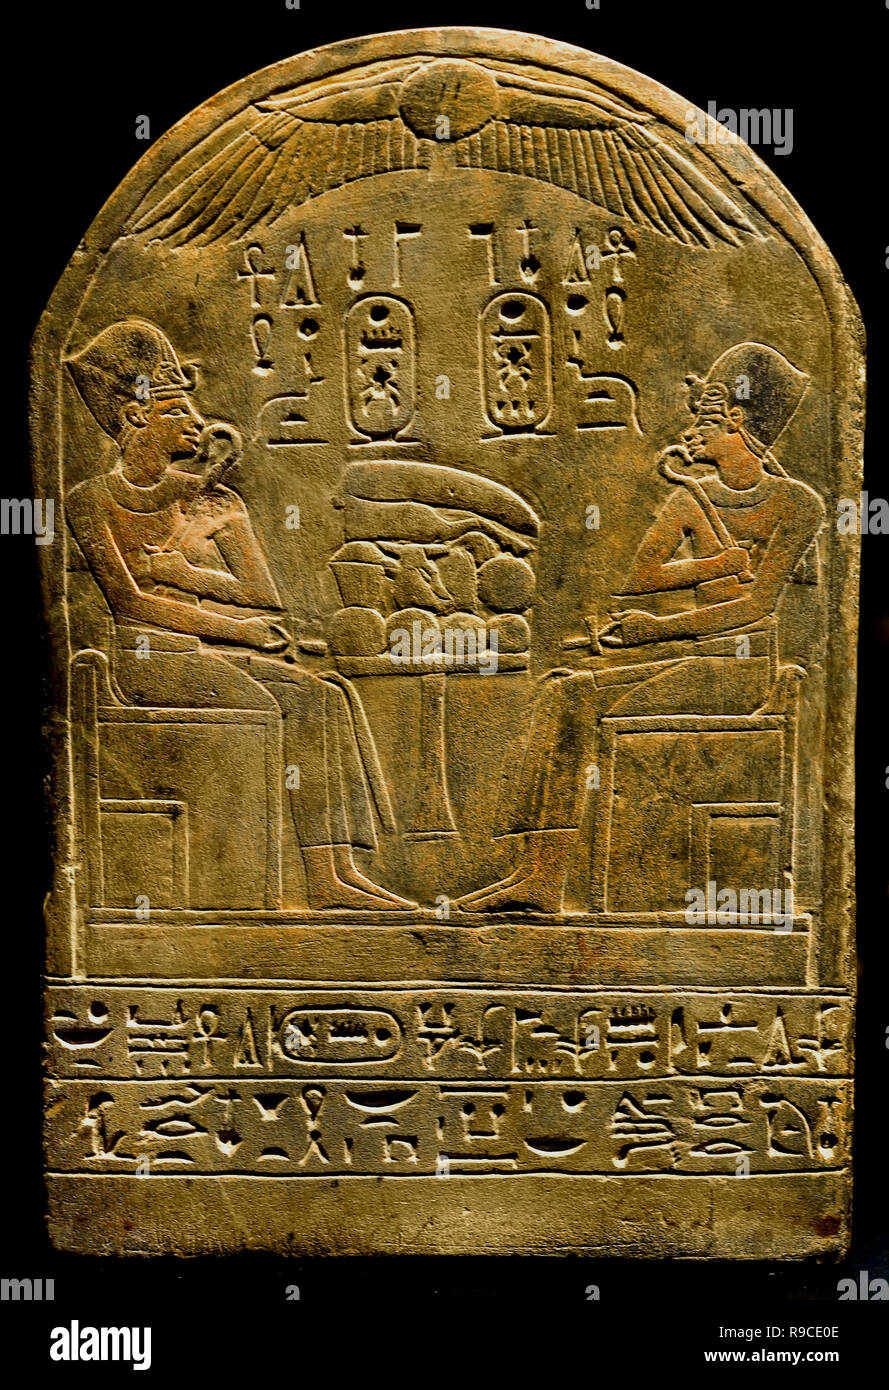 Stèle de Hentnefert calcaire Egypte Dimensions : 31,5 x 21 cm : Nouvel Empire, 18e dynastie 1550-1307 av. J.-C. L'Égypte, l'Égyptien. Banque D'Images